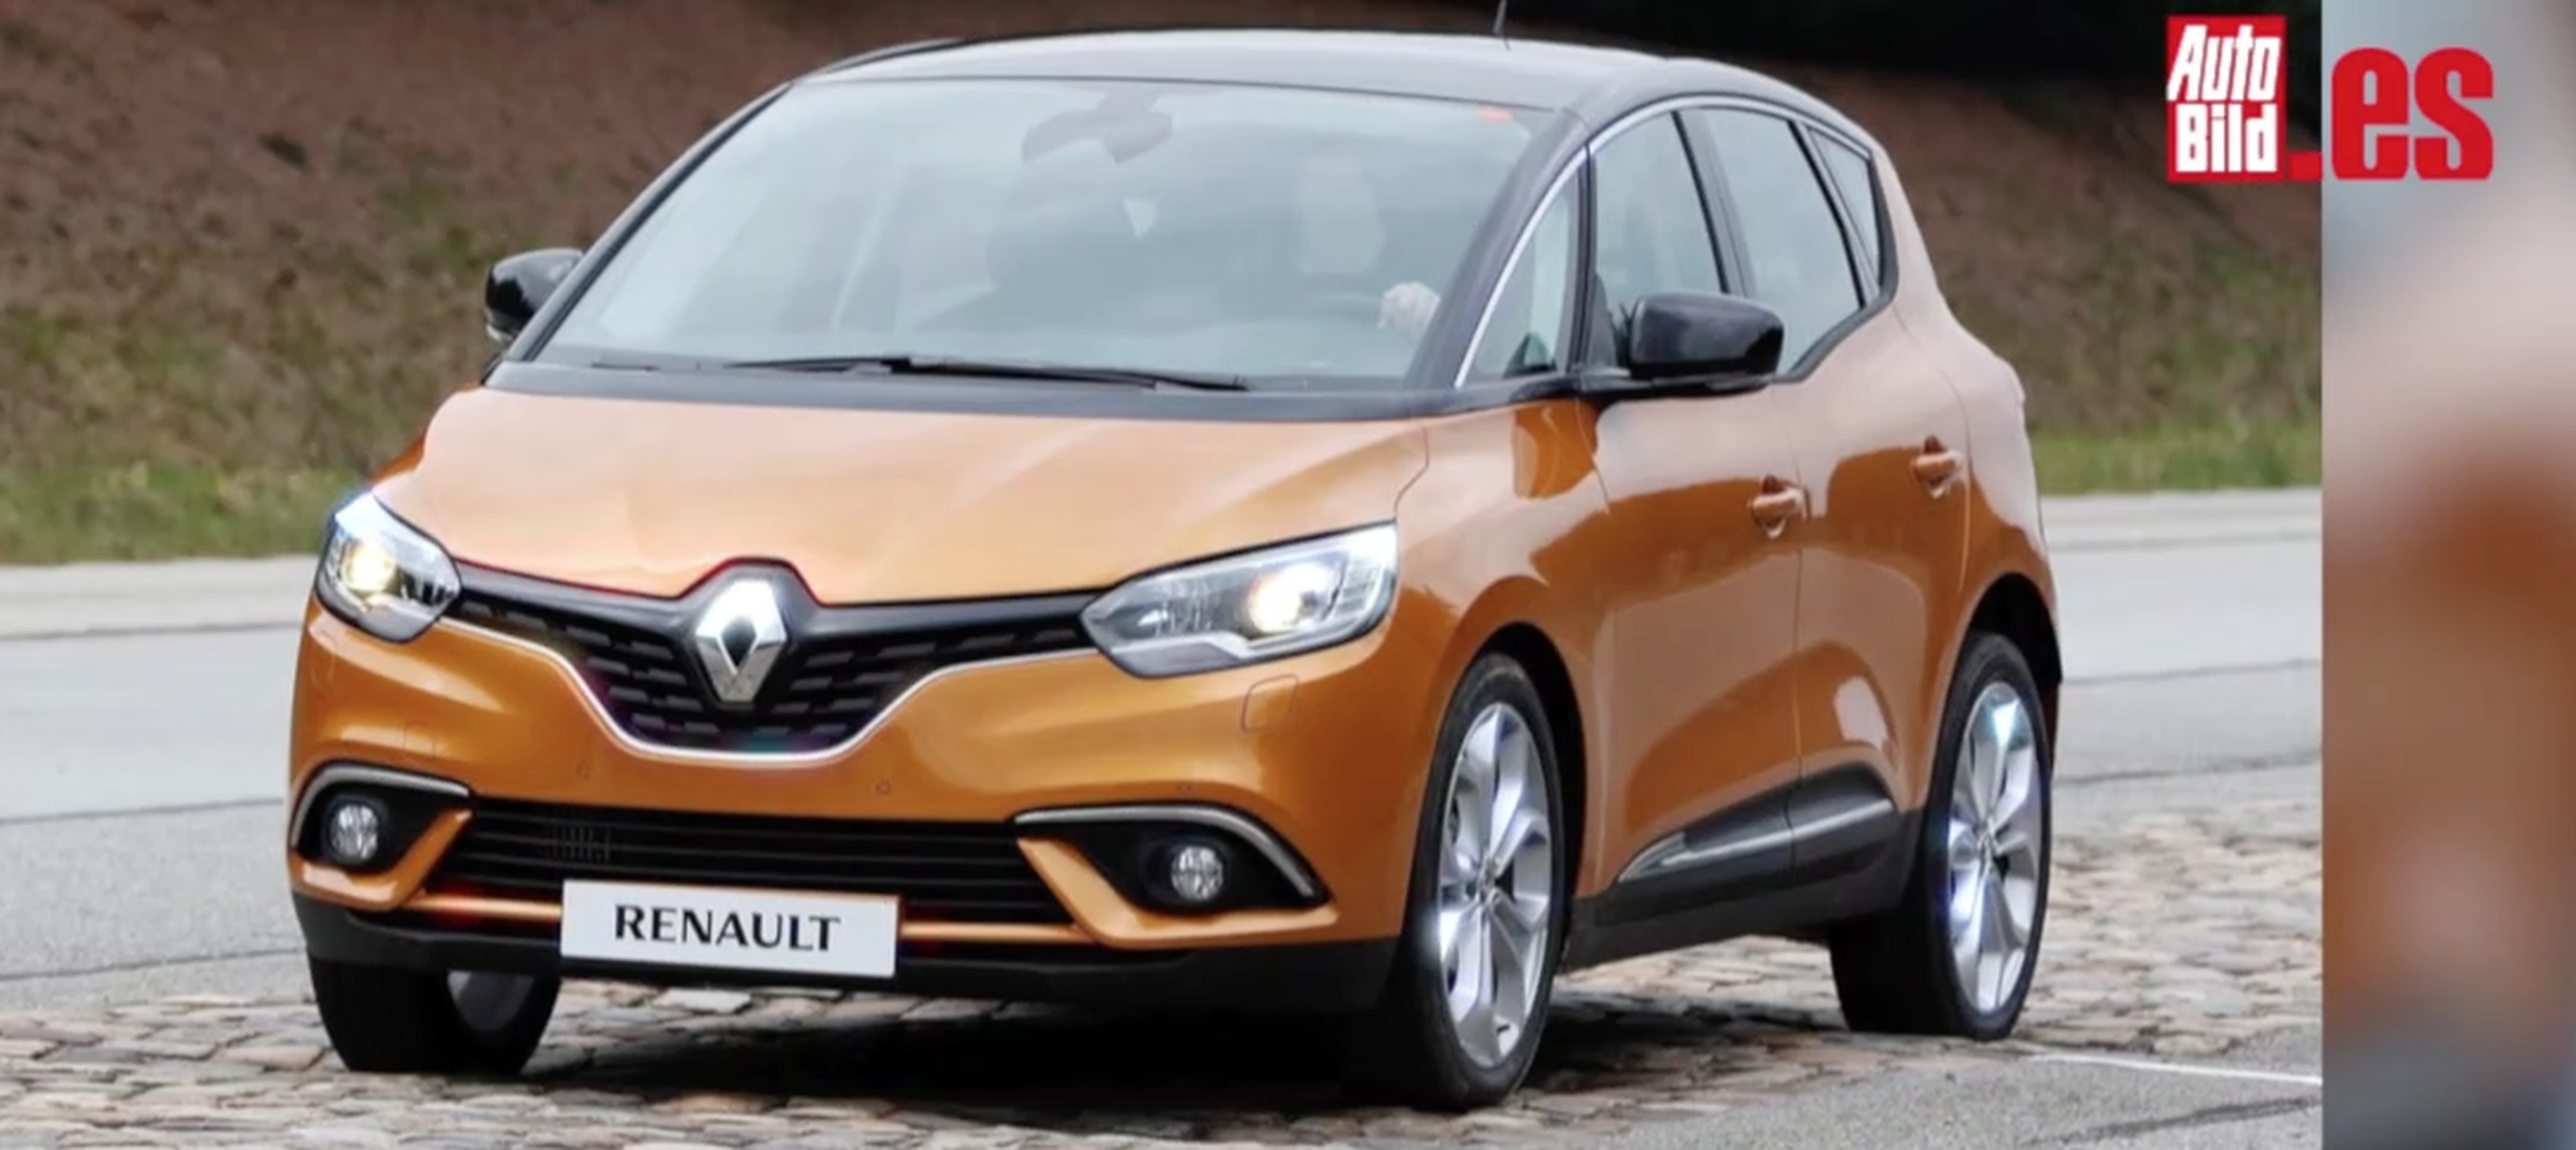 VÍDEO: ¿Sabes qué secretos guarda el Renault Scénic 2017?